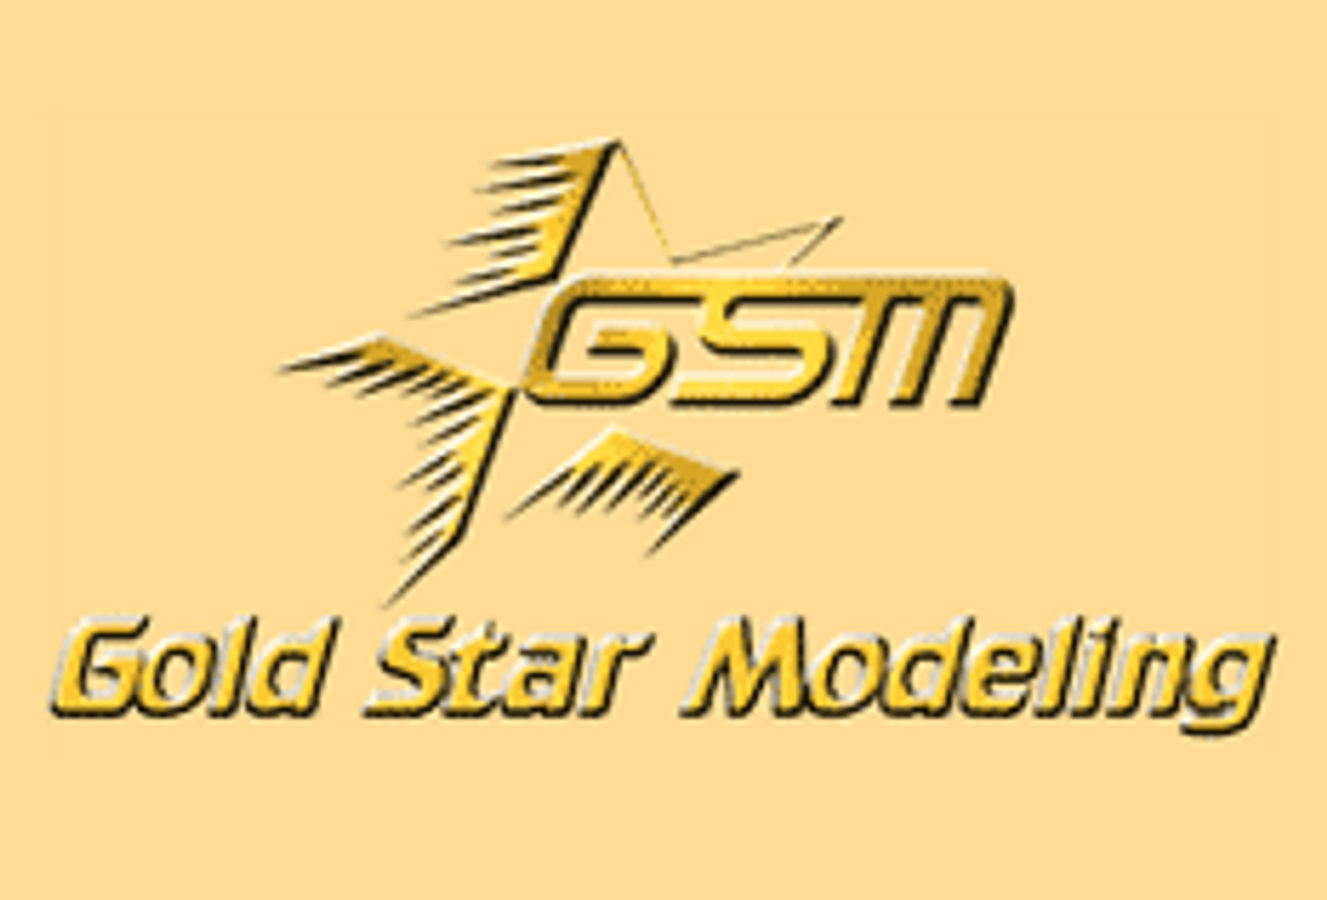 Gold Star Modeling